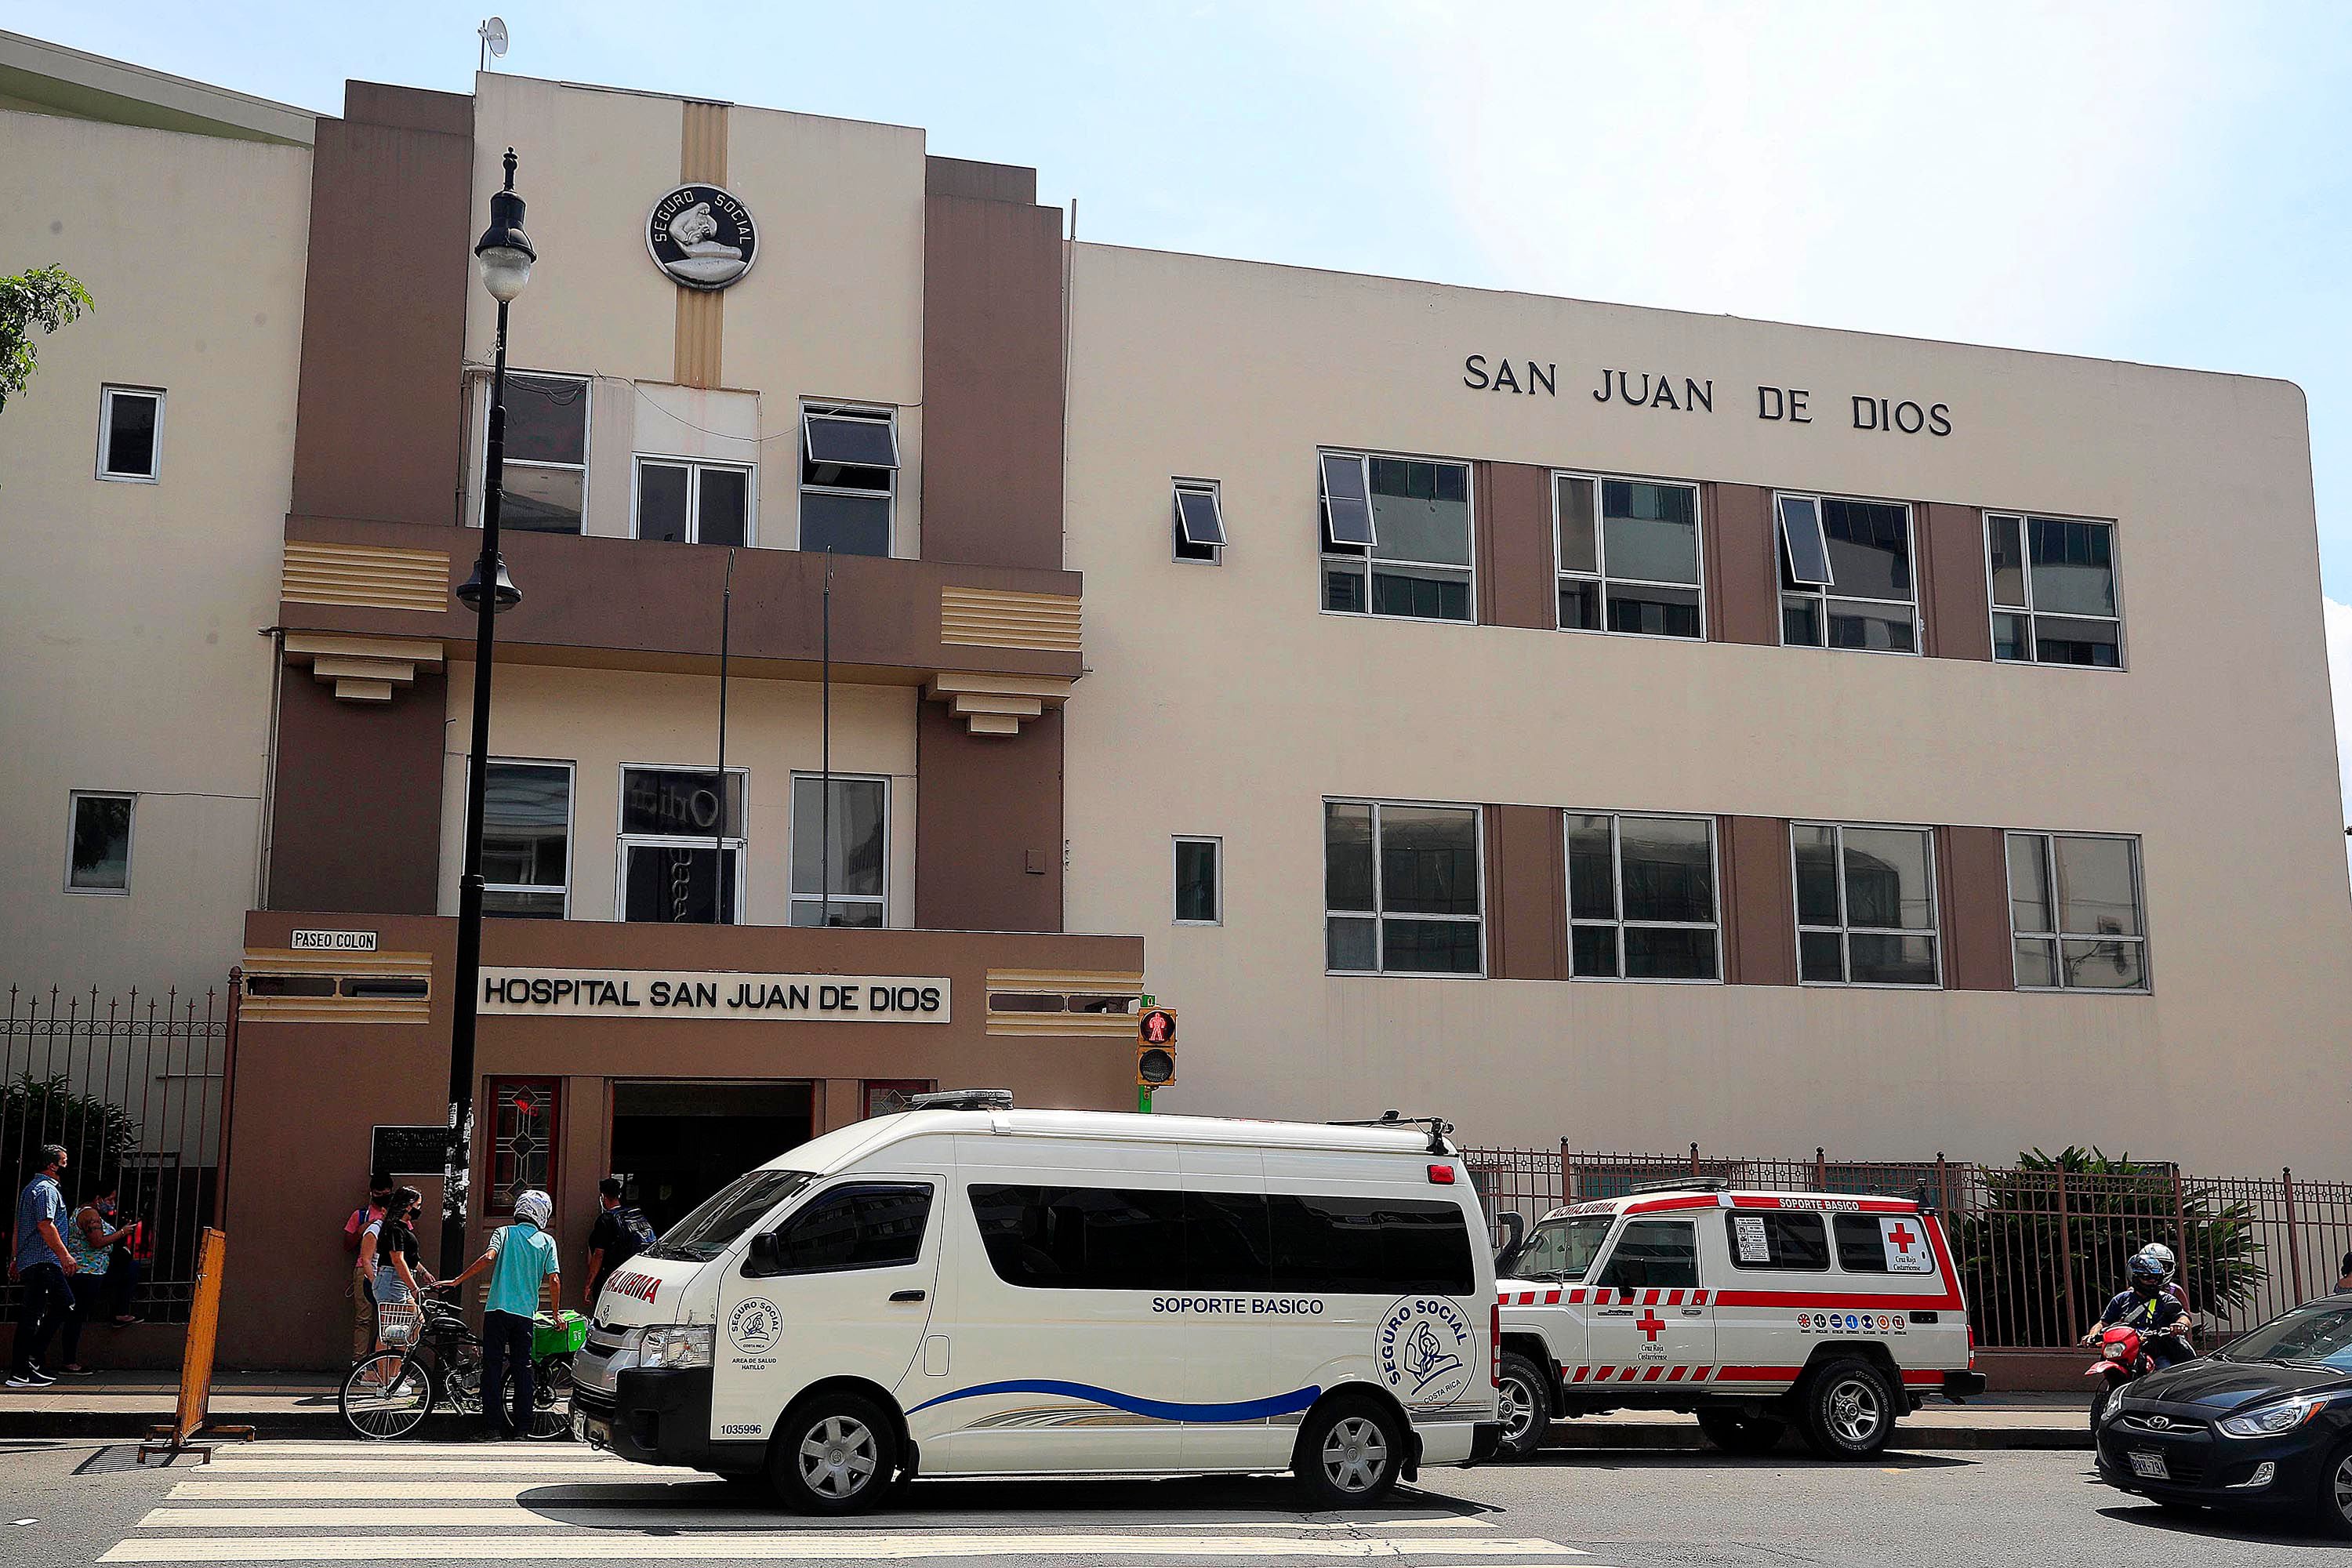 El sujeto ingresó con una pistola sin permisos al Hospital San Juan de Dios. 